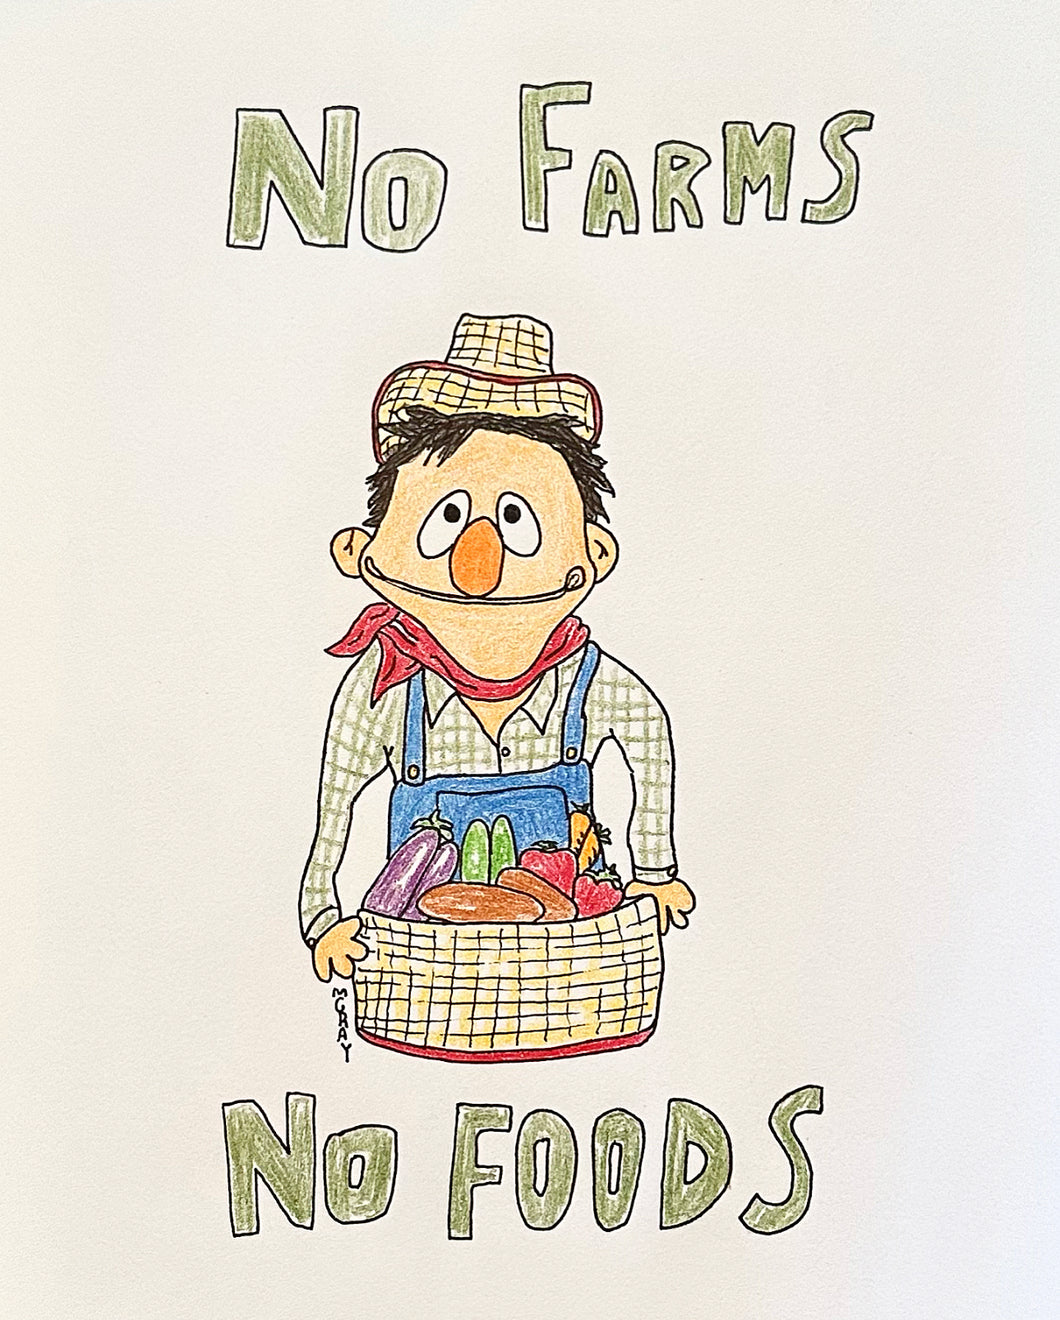 NO FARMS NO FOODS